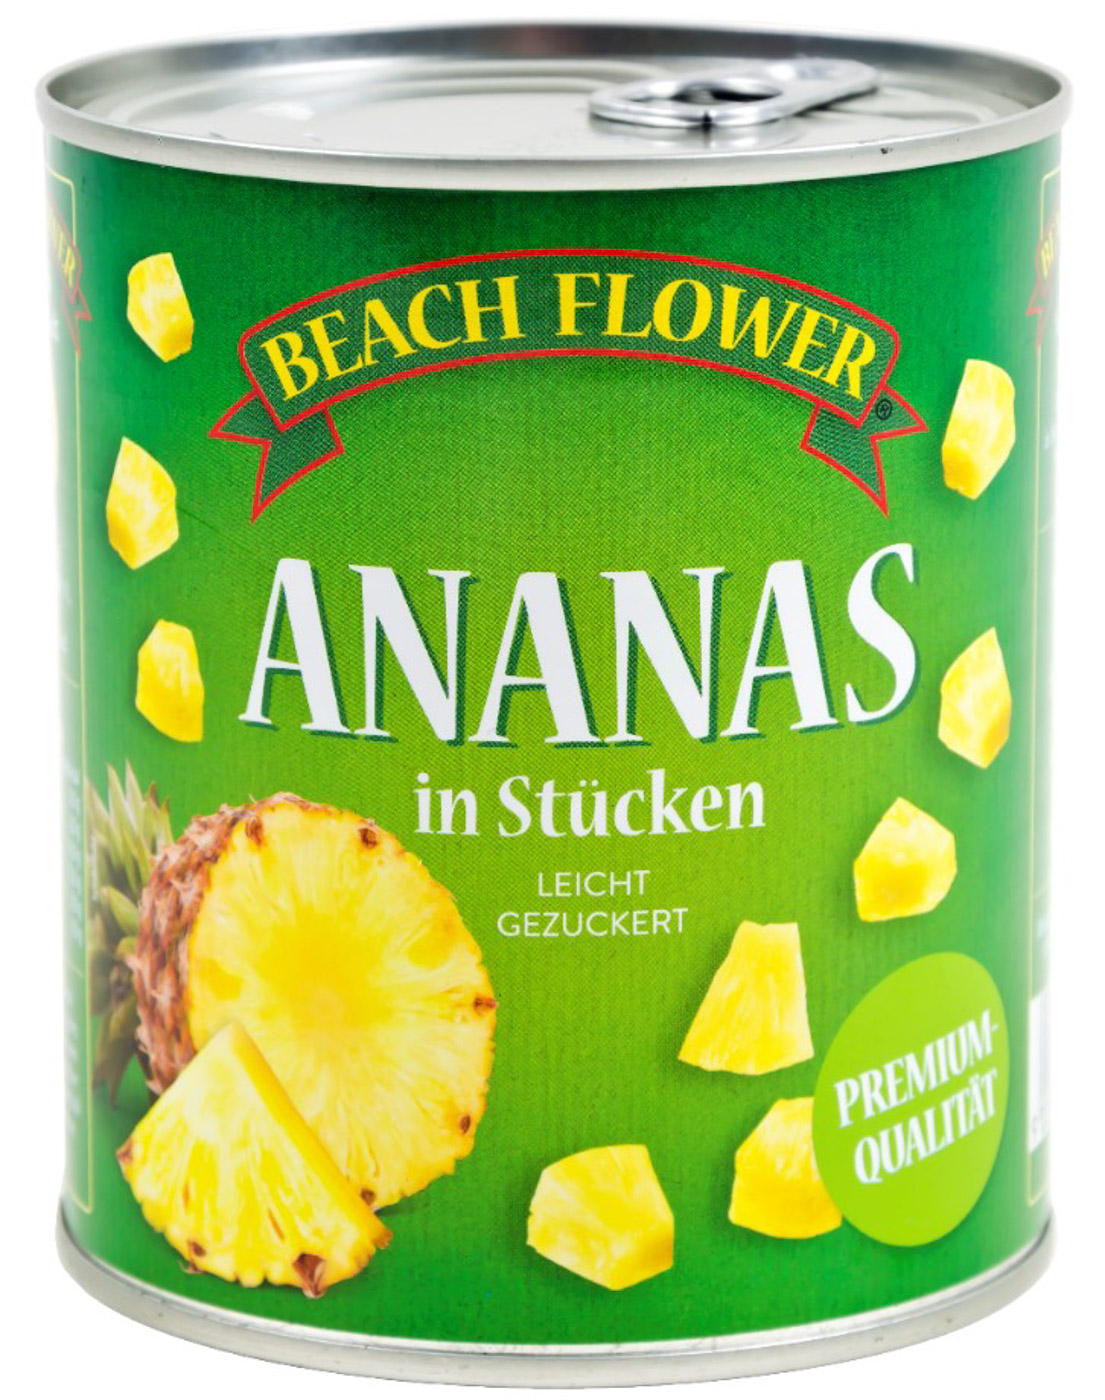 Beach Flower Ananas Stücke Konserve 825G